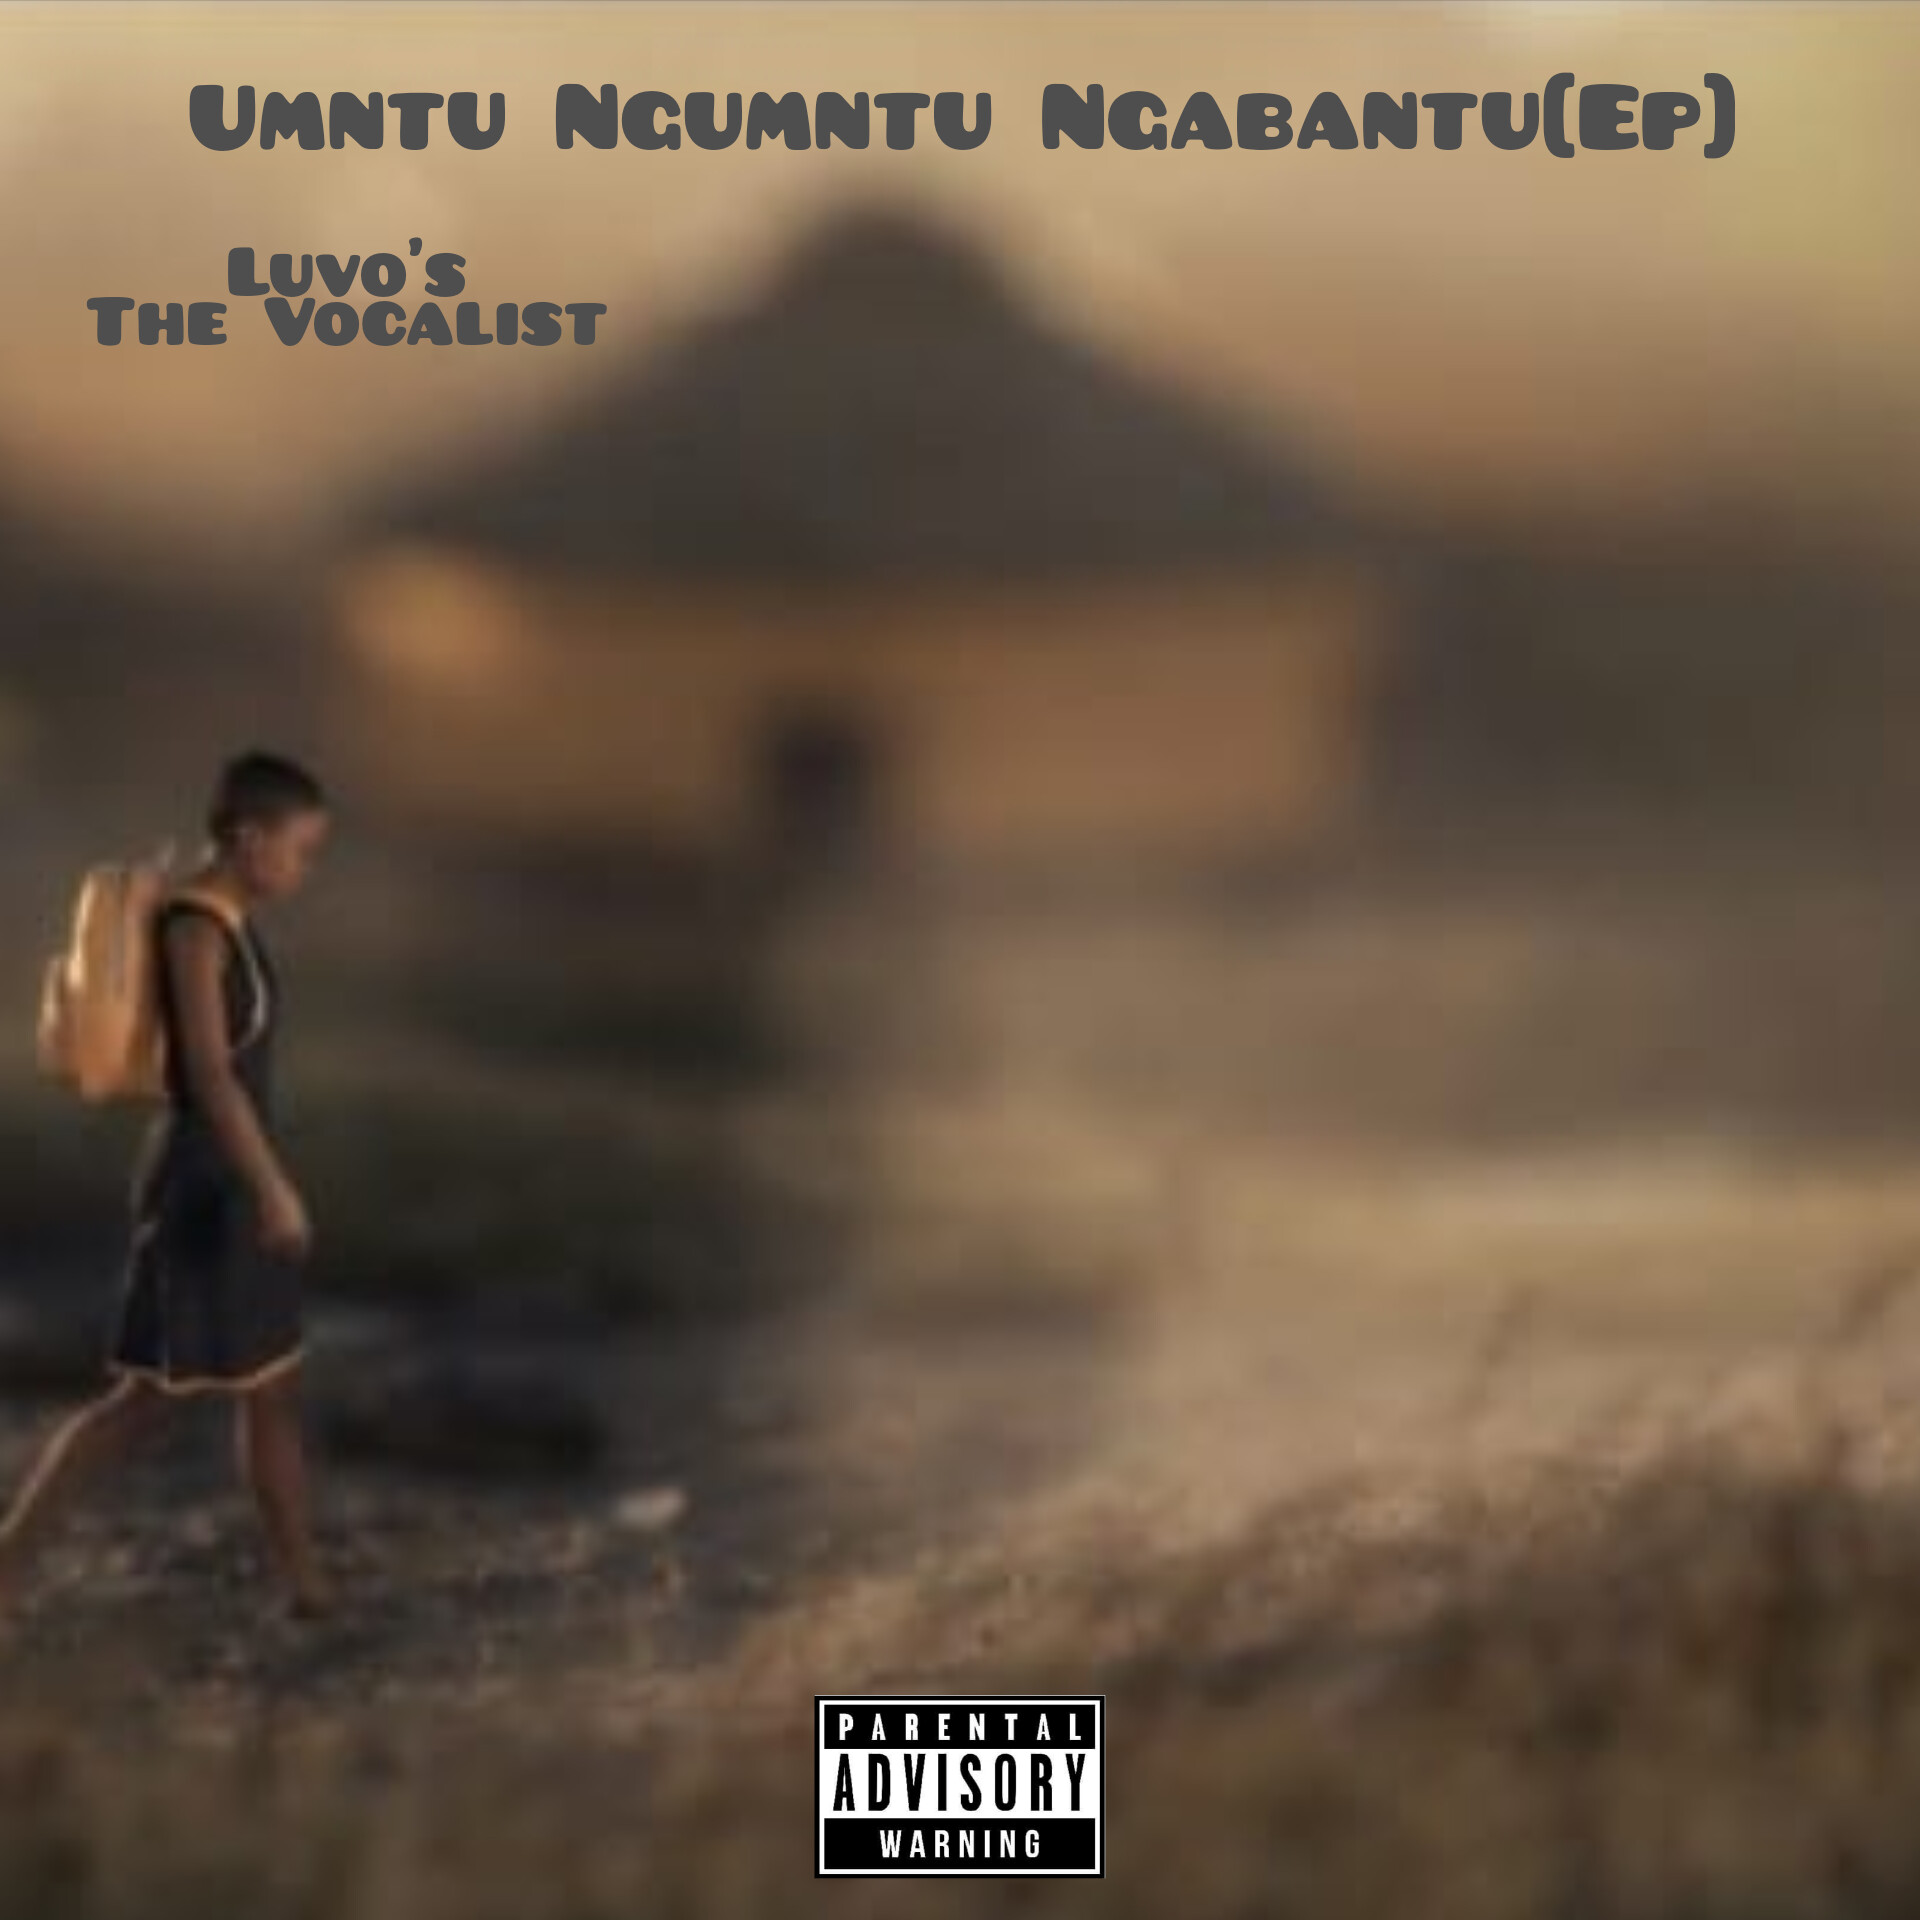 UMNTU NGUMNTU NGABANTU [EP] - Luvo's the Vocalist